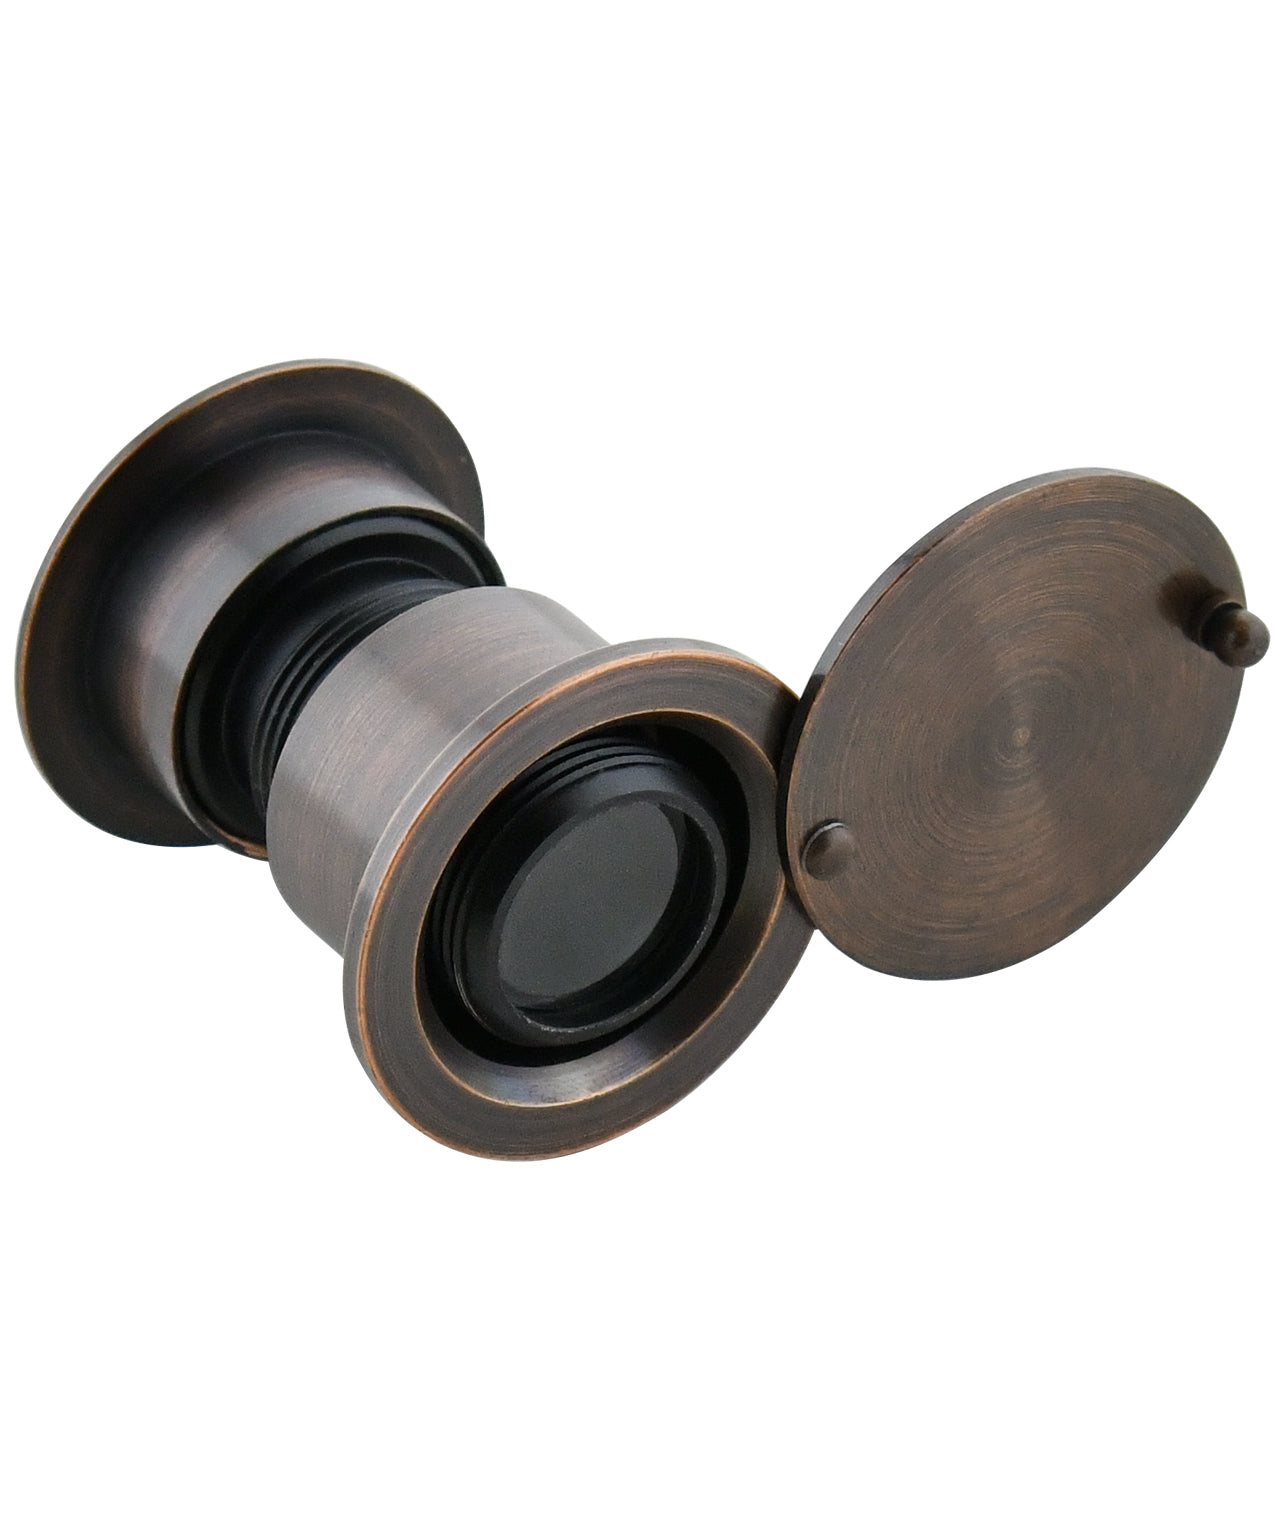 Solid Brass Security Peek Peepholes for Front Door - Oil Rubbed Bronze